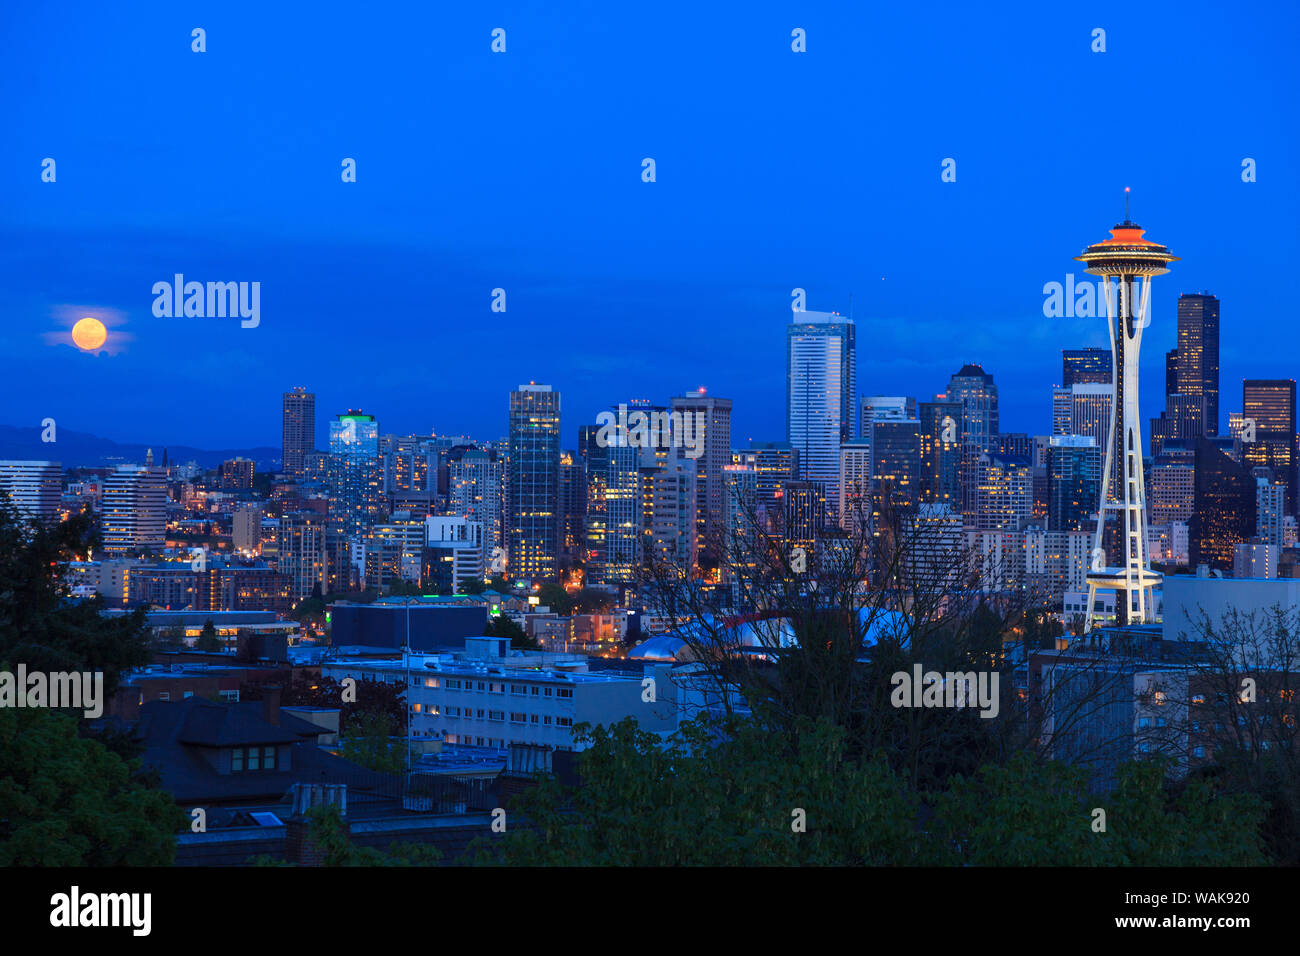 2012 Blick auf die Skyline von Seattle Skyline mit der Space Needle Dach lackiert 'Galaxy Gold', statt der üblichen Weiß, für sein 50-jähriges Jubiläum in diesem Jahr. (Redaktionelle nur verwenden) Stockfoto